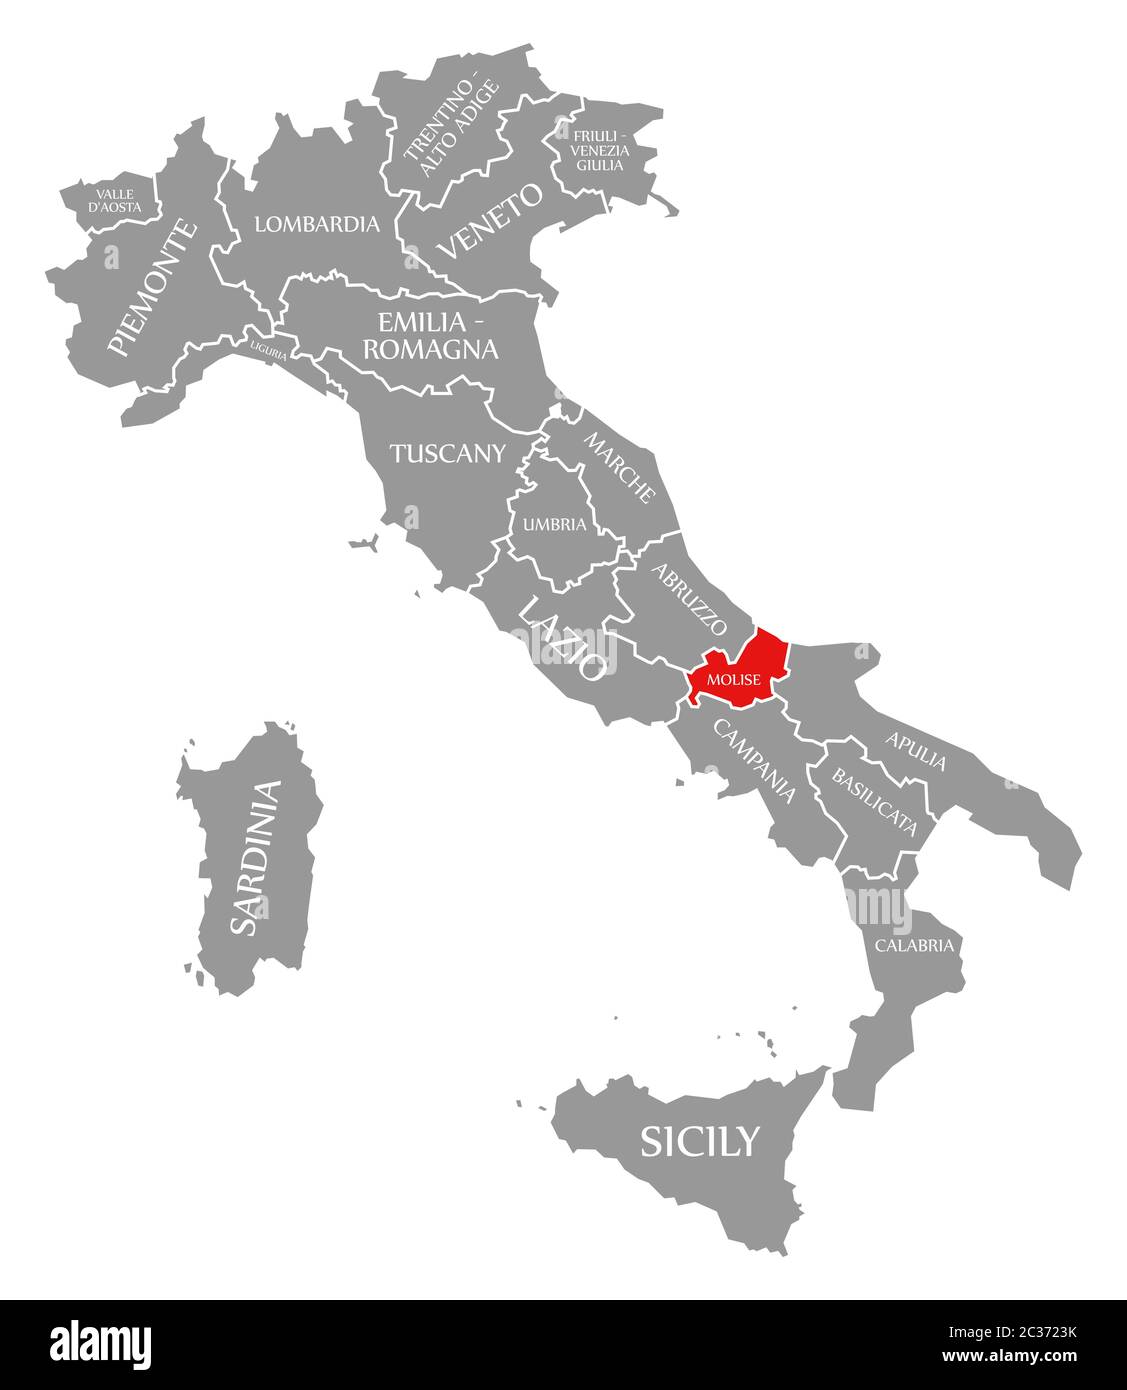 Molise evidenziata in rosso nella mappa di Italia Foto Stock